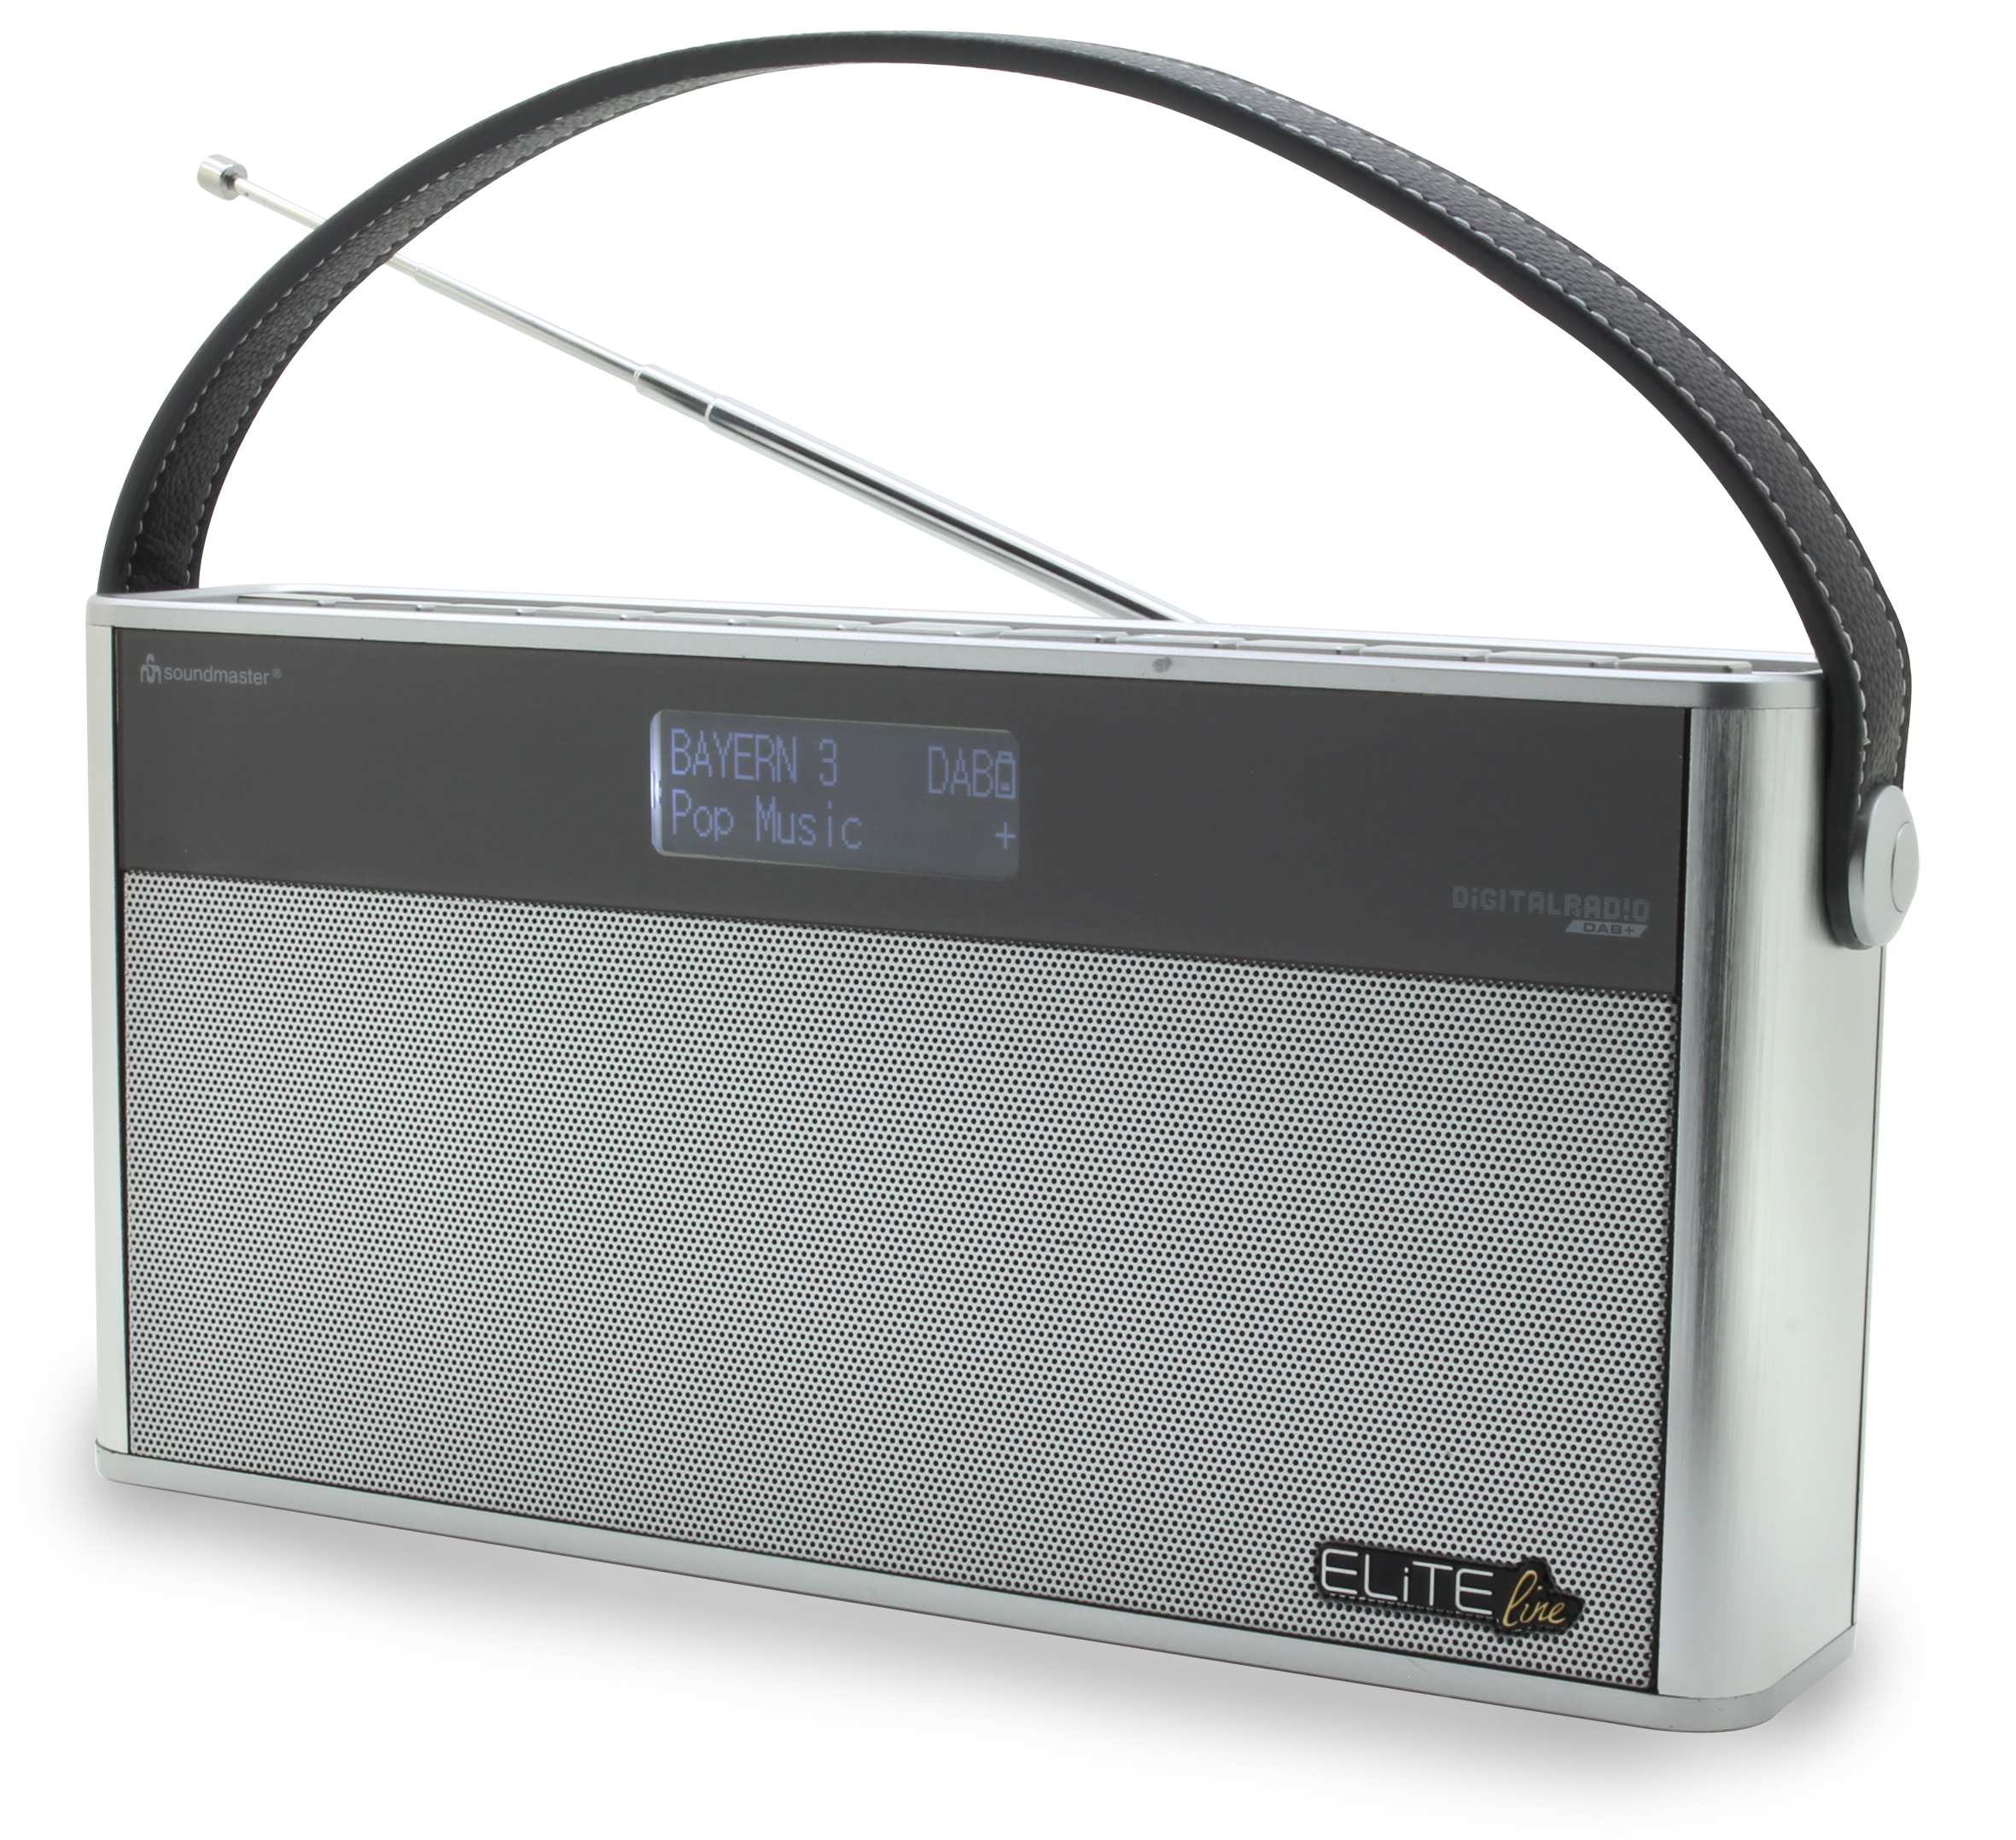 SI DAB SOUNDMASTER 750 Digital, Silber Kofferradio, DAB+, FM,